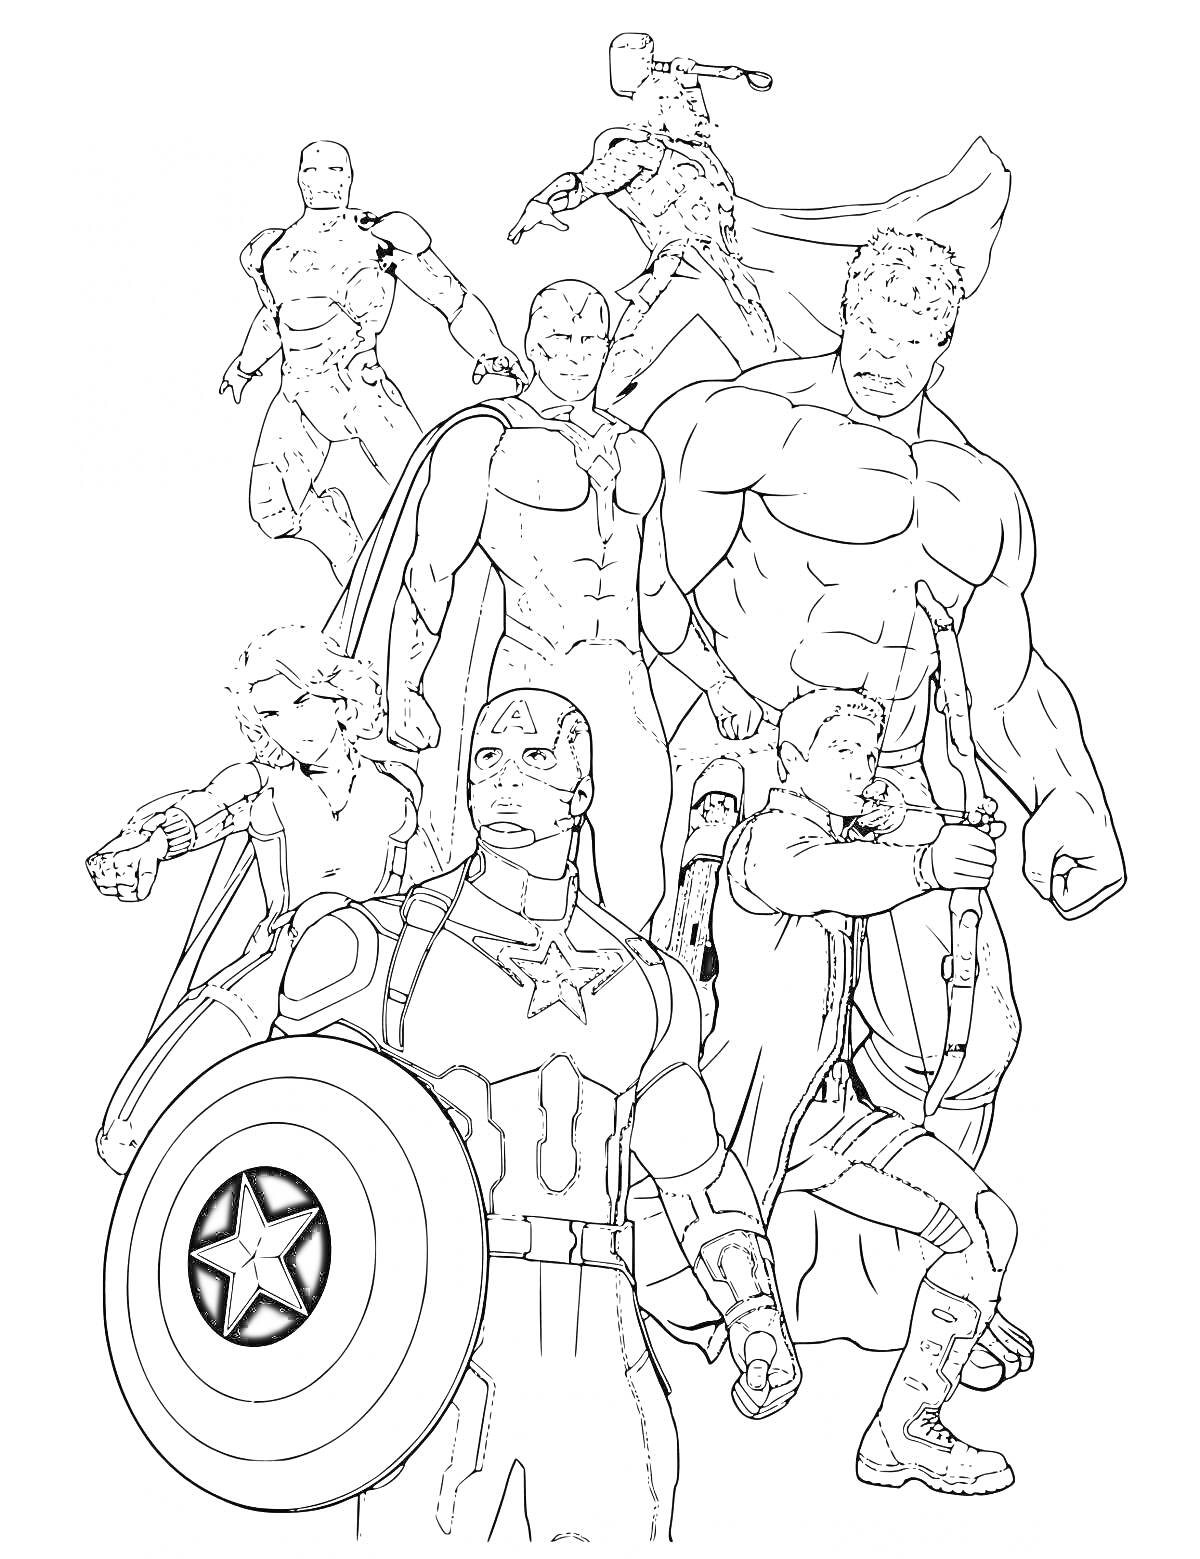 Команда Мстителей - Капитан Америка с щитом, Тор с молотом, Халк, Соколиный Глаз с луком, Железный Человек, Вижн